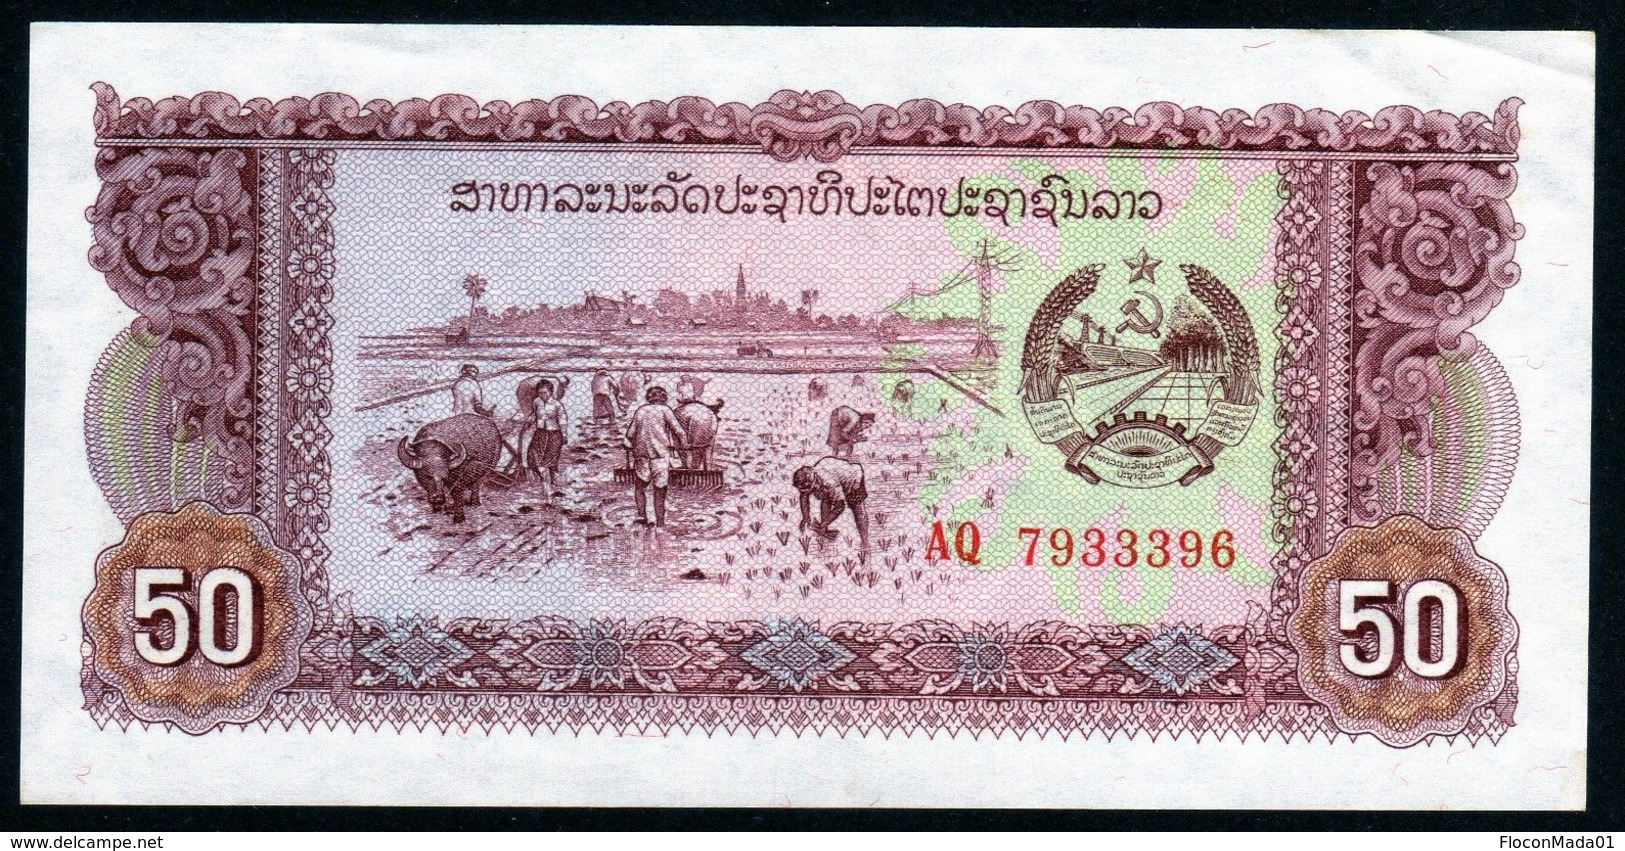 Laos 1979 50 Kips AU UNC - Laos